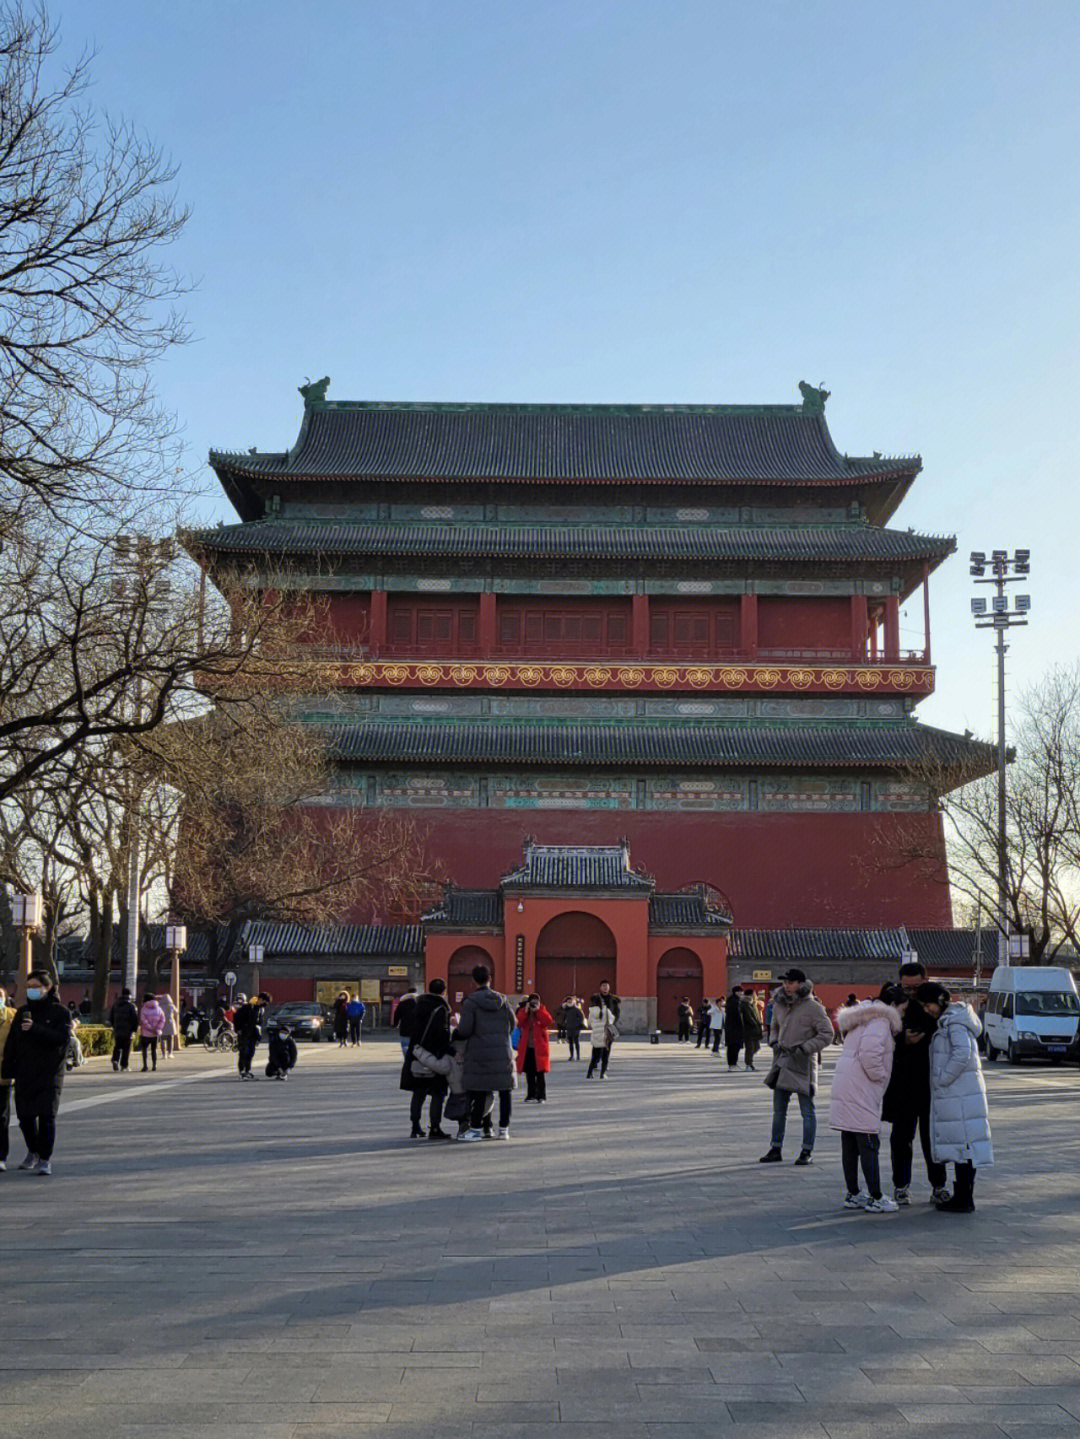 北京鼓楼是坐落在北京市南北中轴线北端的一组古代建筑;钟鼓楼作为元